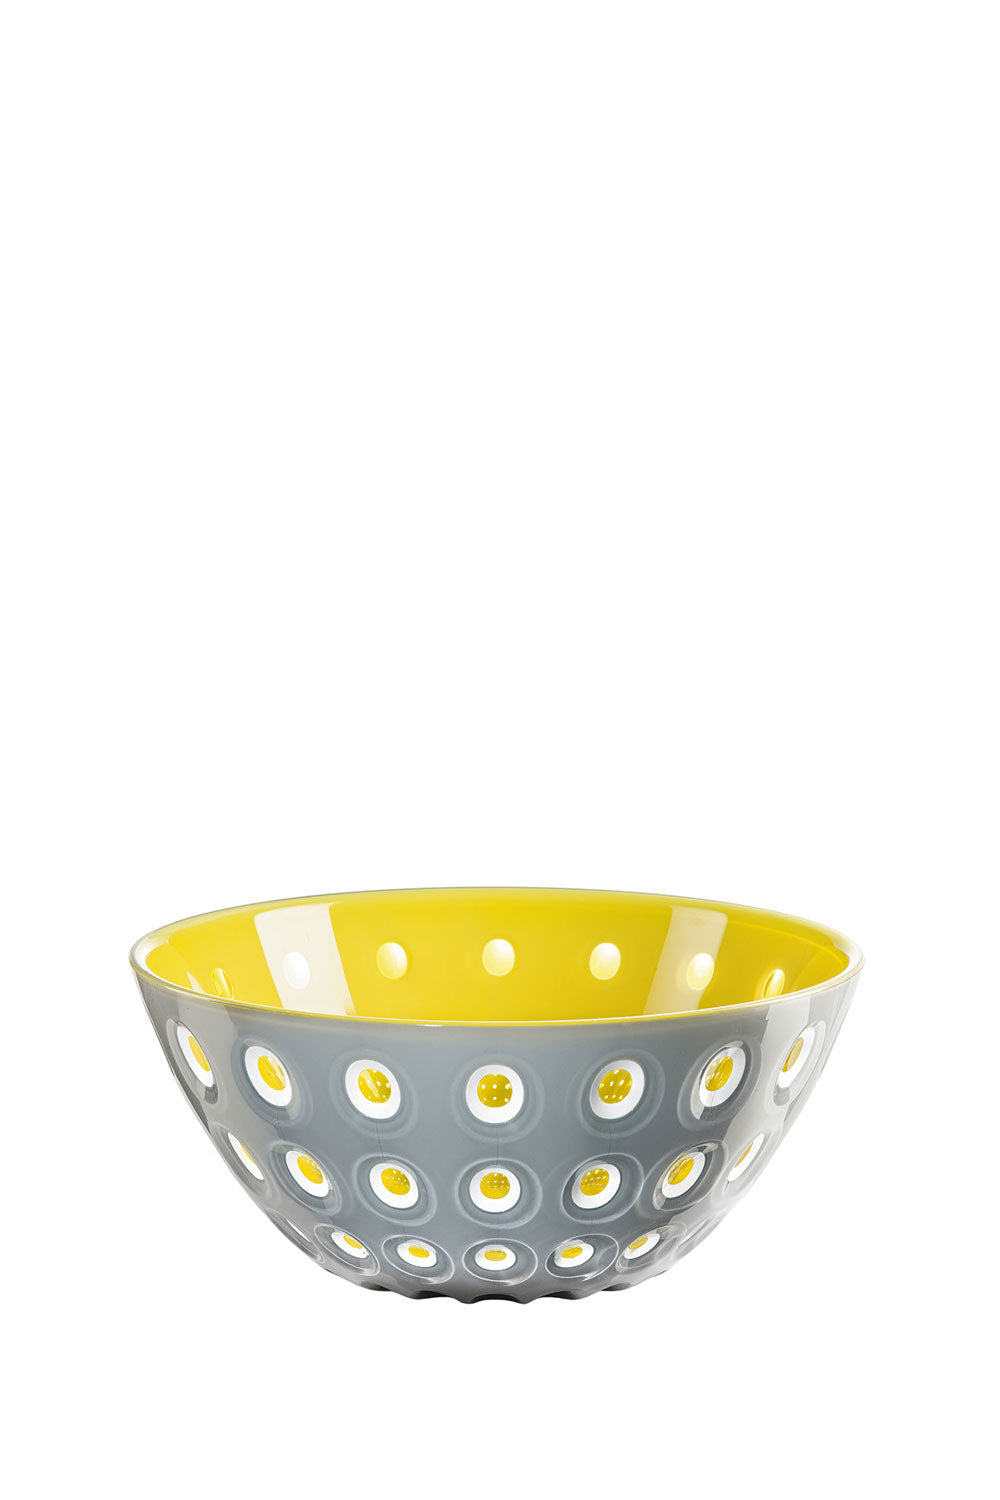 Murrine Grey & Yellow Bowl, 20 cm - Maison7